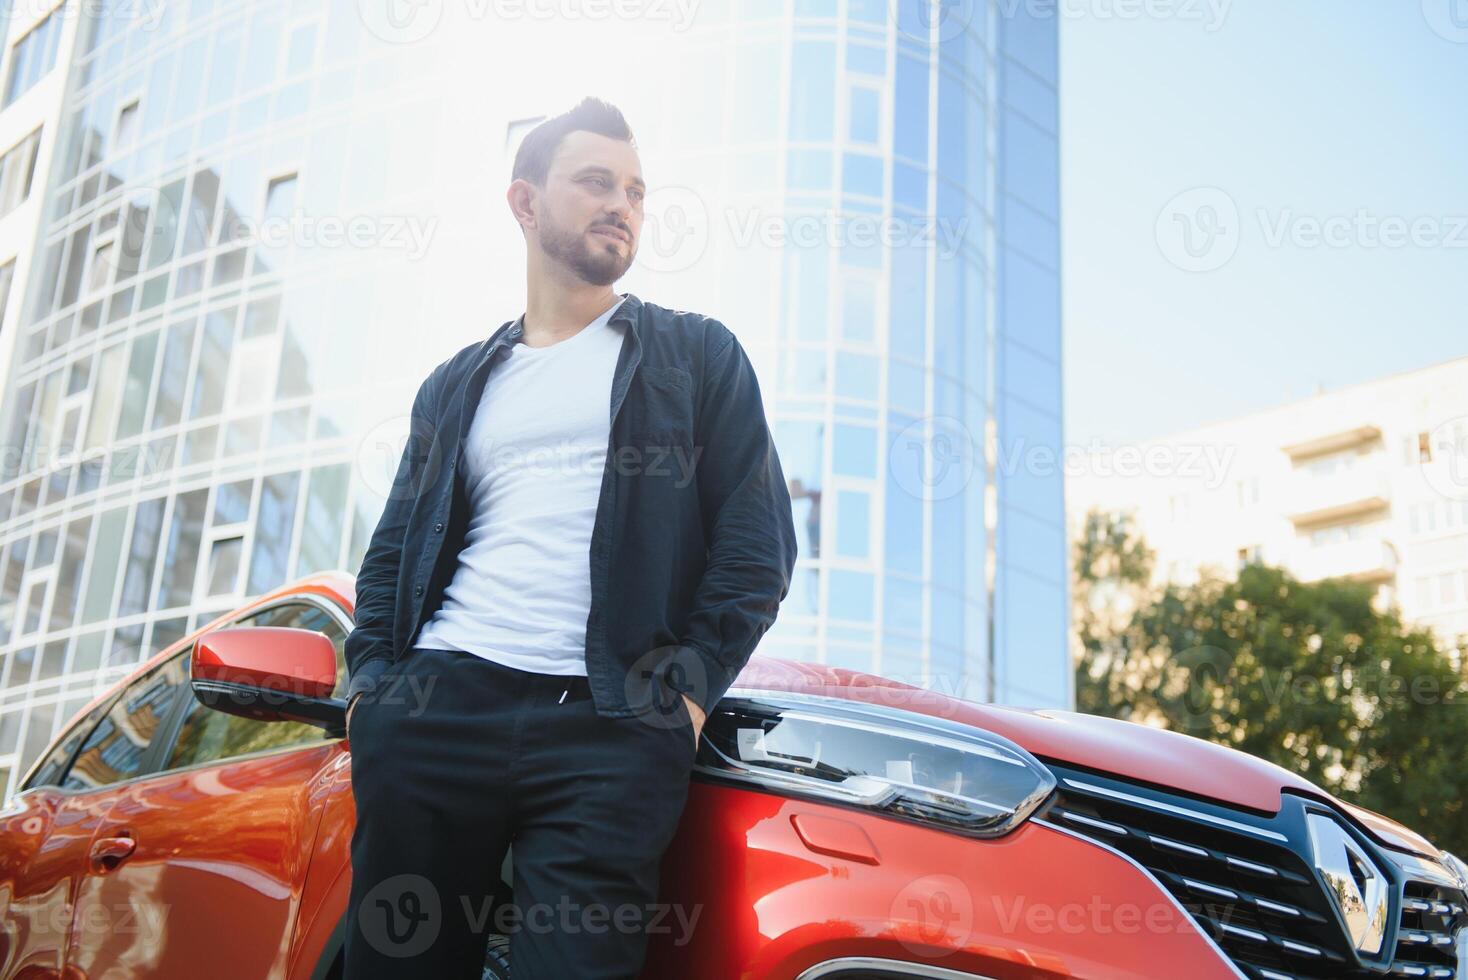 een aantrekkelijk Mens met een baard staat De volgende naar zijn auto in de parkeren kavel. hij is attent, en looks weg, iemand is aan het wachten. zomer dag foto